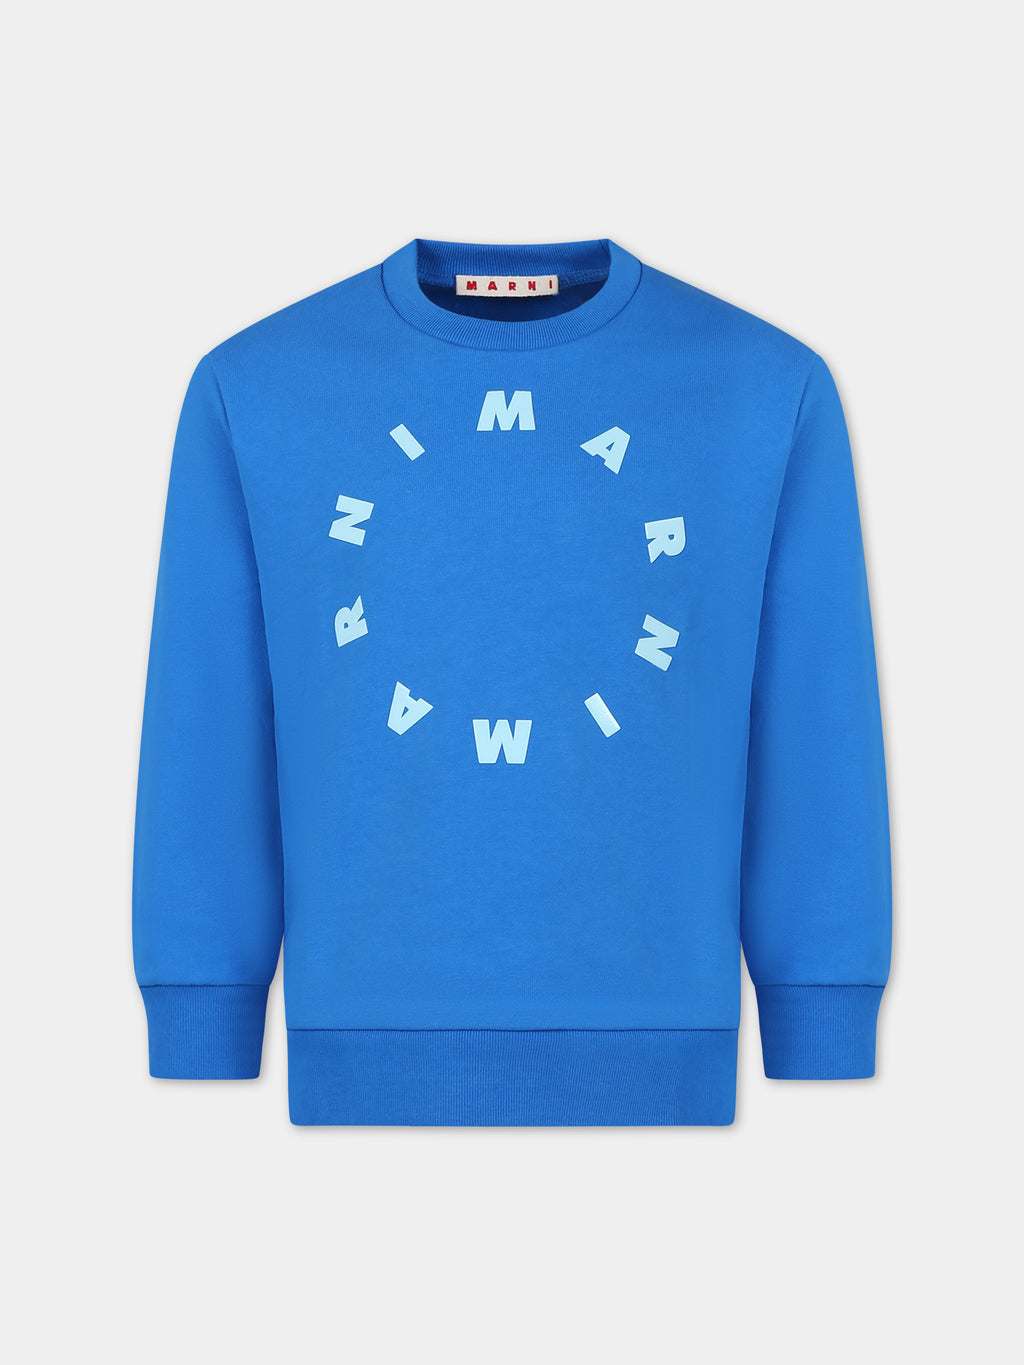 Sweat-shirt bleu pour enfants avec logo